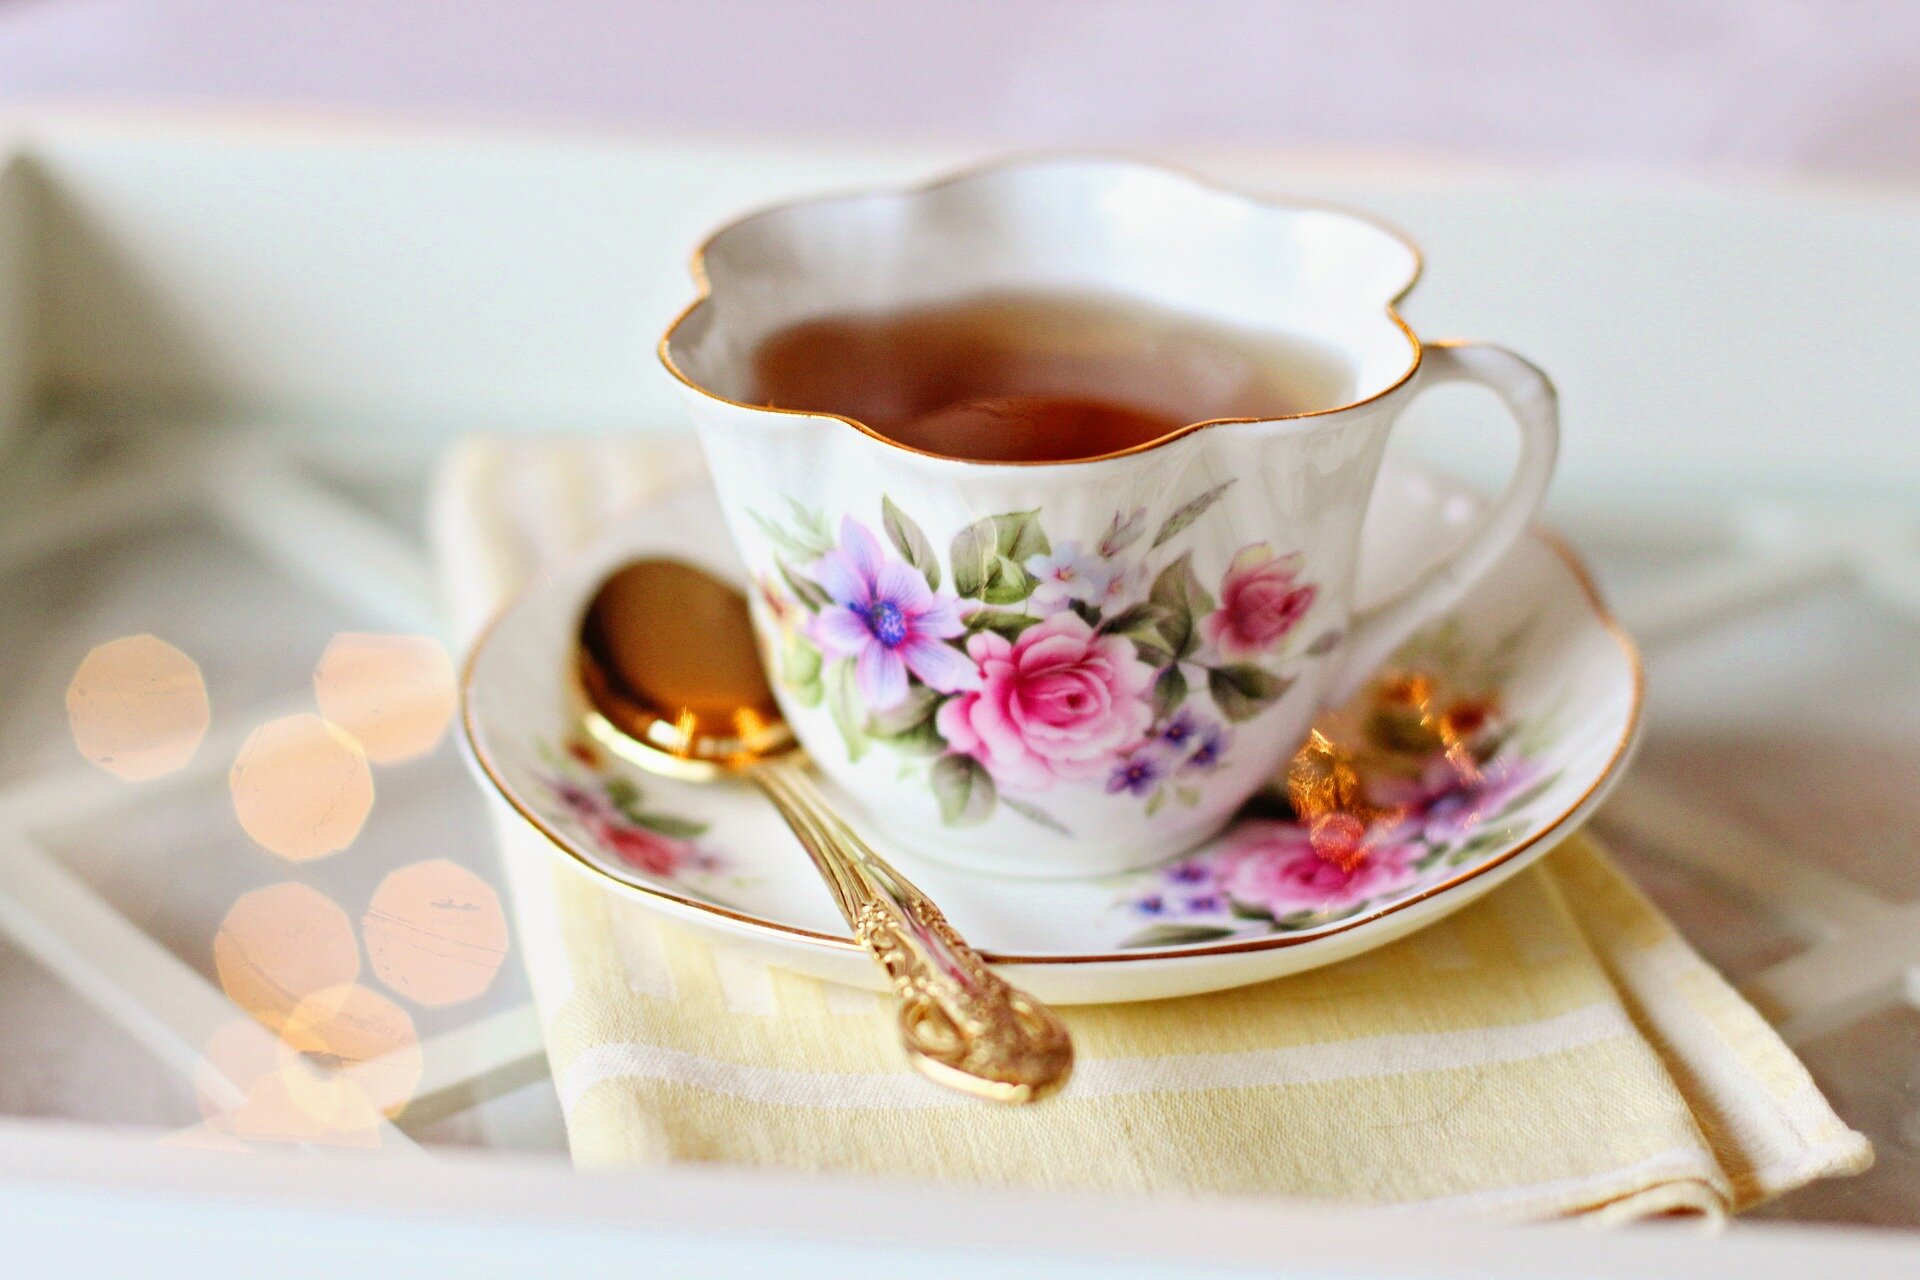 Jsou v mém šálku čaje prospěšné polyfenoly, nebo rakovinotvorné vedlejší produkty desinfekce? Kredit: Veřejná doména Pixabay/CC0